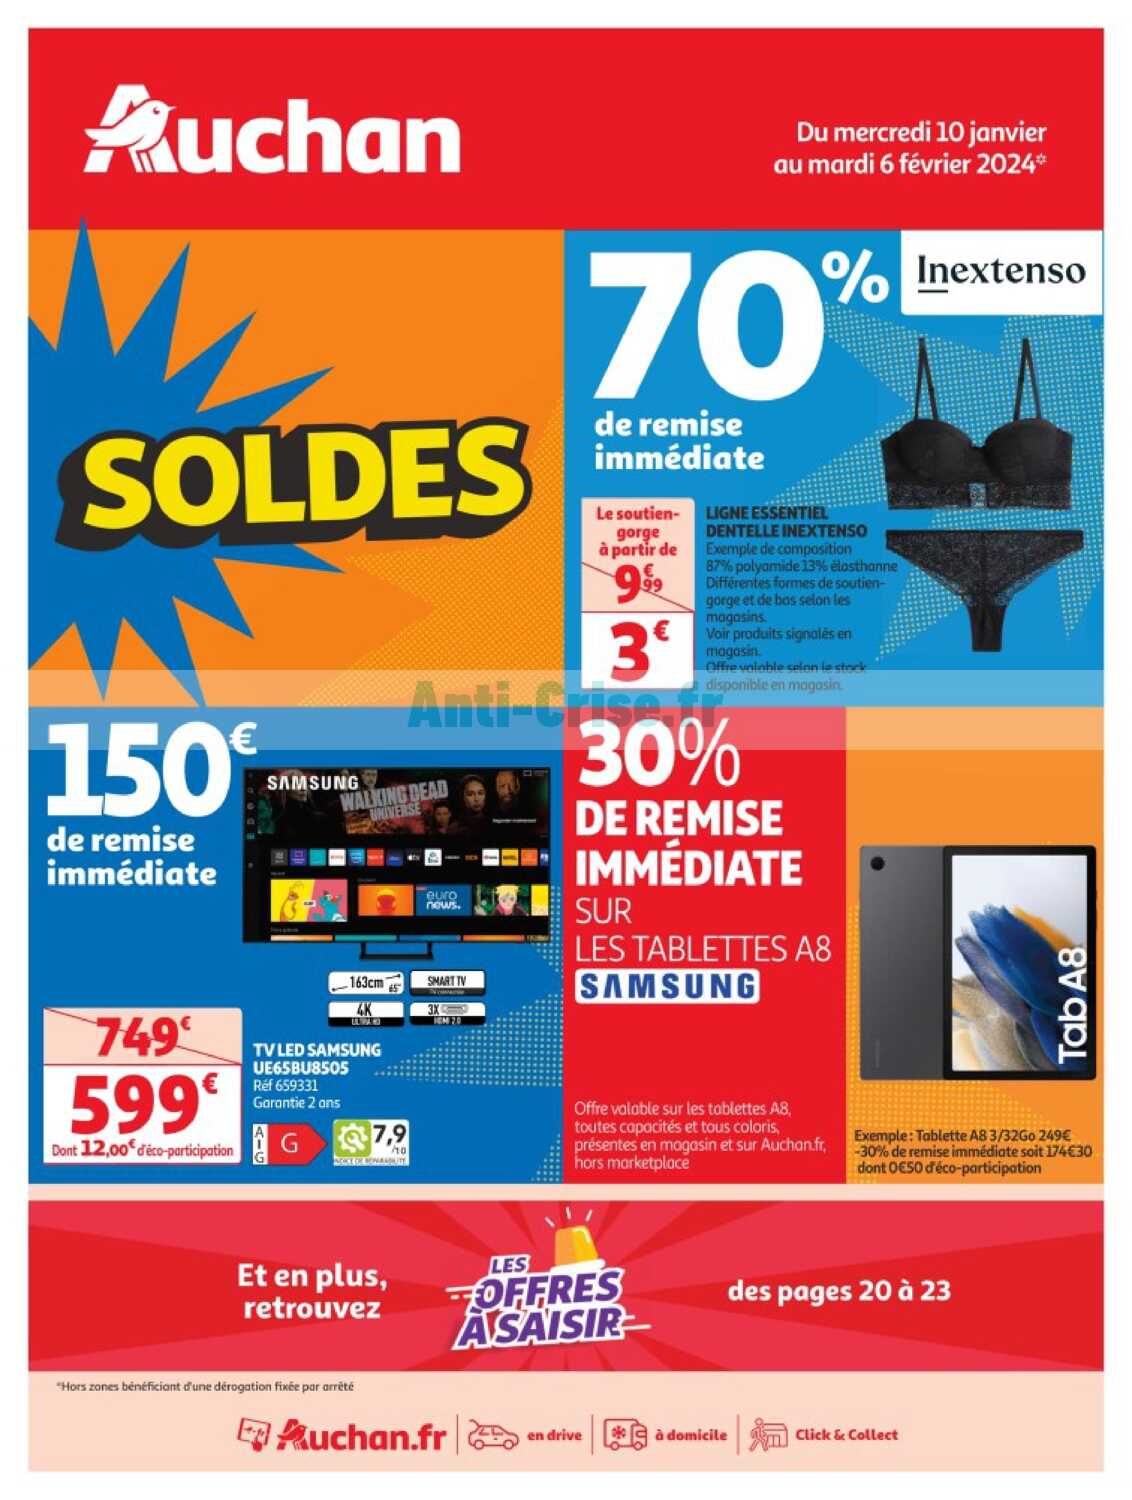 Catalogue Auchan du 10 janvier au 06 février 2024 (Soldes)AUCHAN  : le nouveau catalogue du 10 janvier au 06 février 2024 est disponible! Les  nouvelles promos !